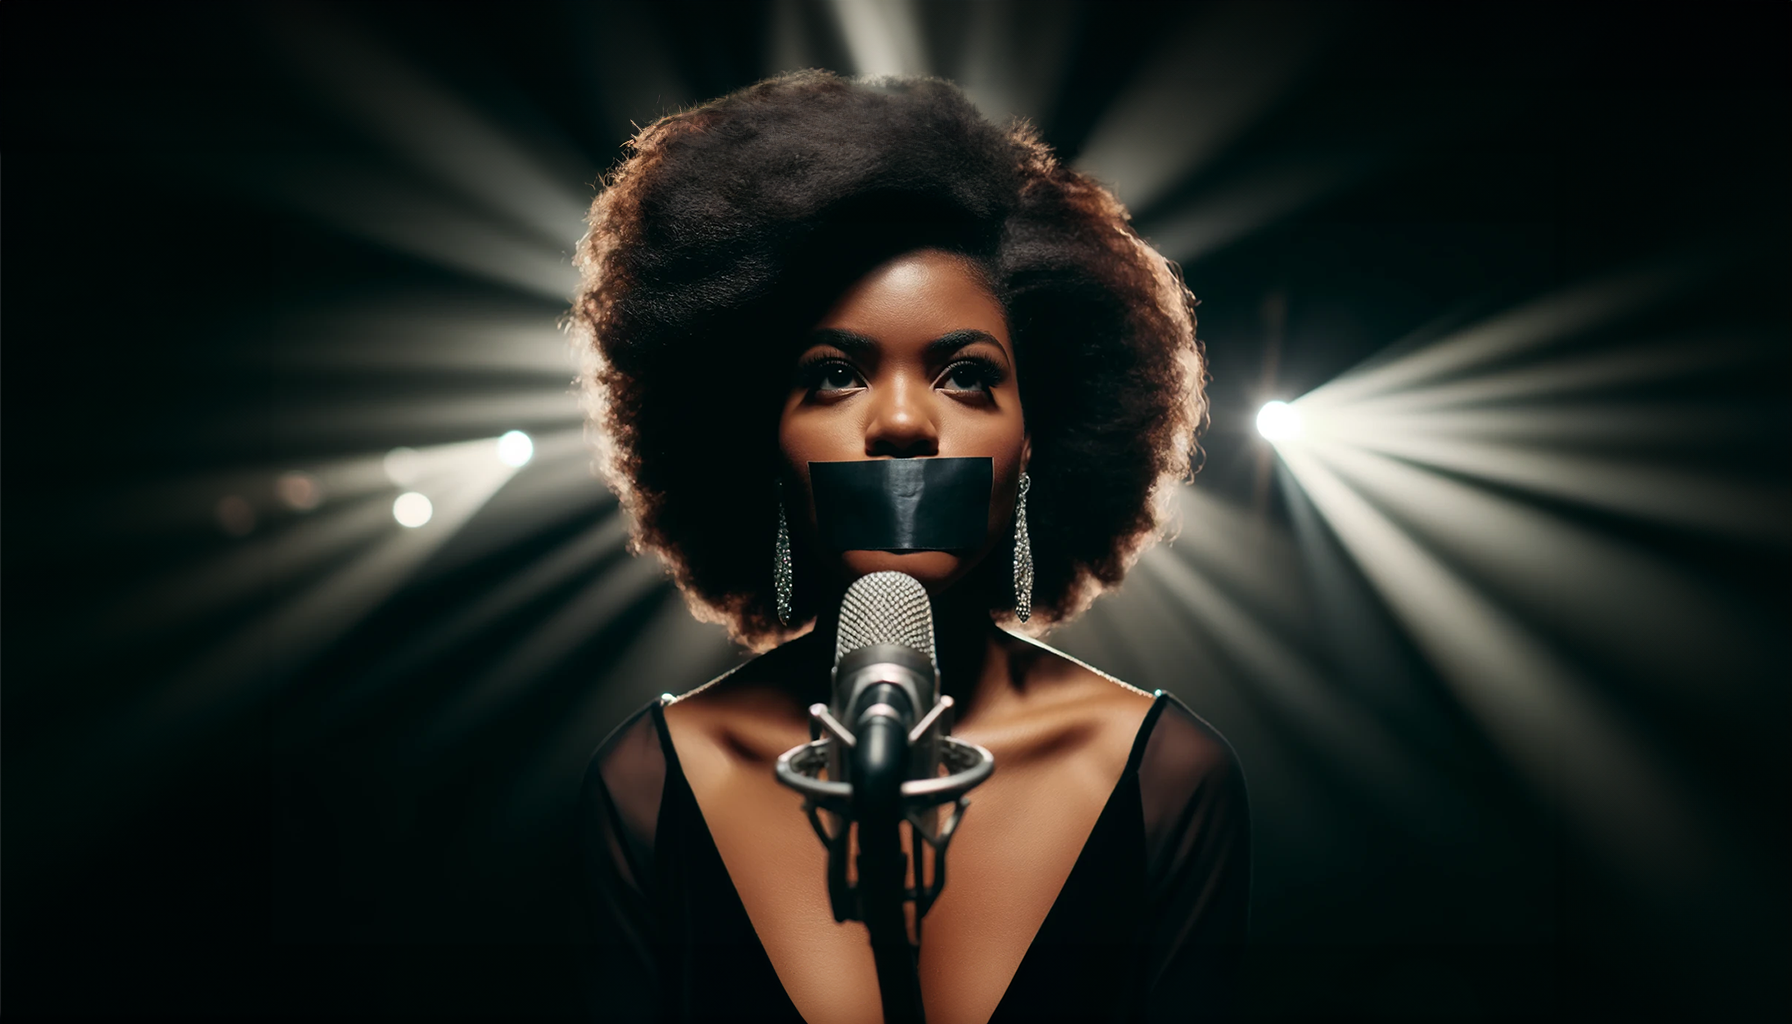 Une chanteuse se tient sur scène devant un micro. Sa bouche est recouverte de scotch noir. © Futura, créé avec Dall.E   